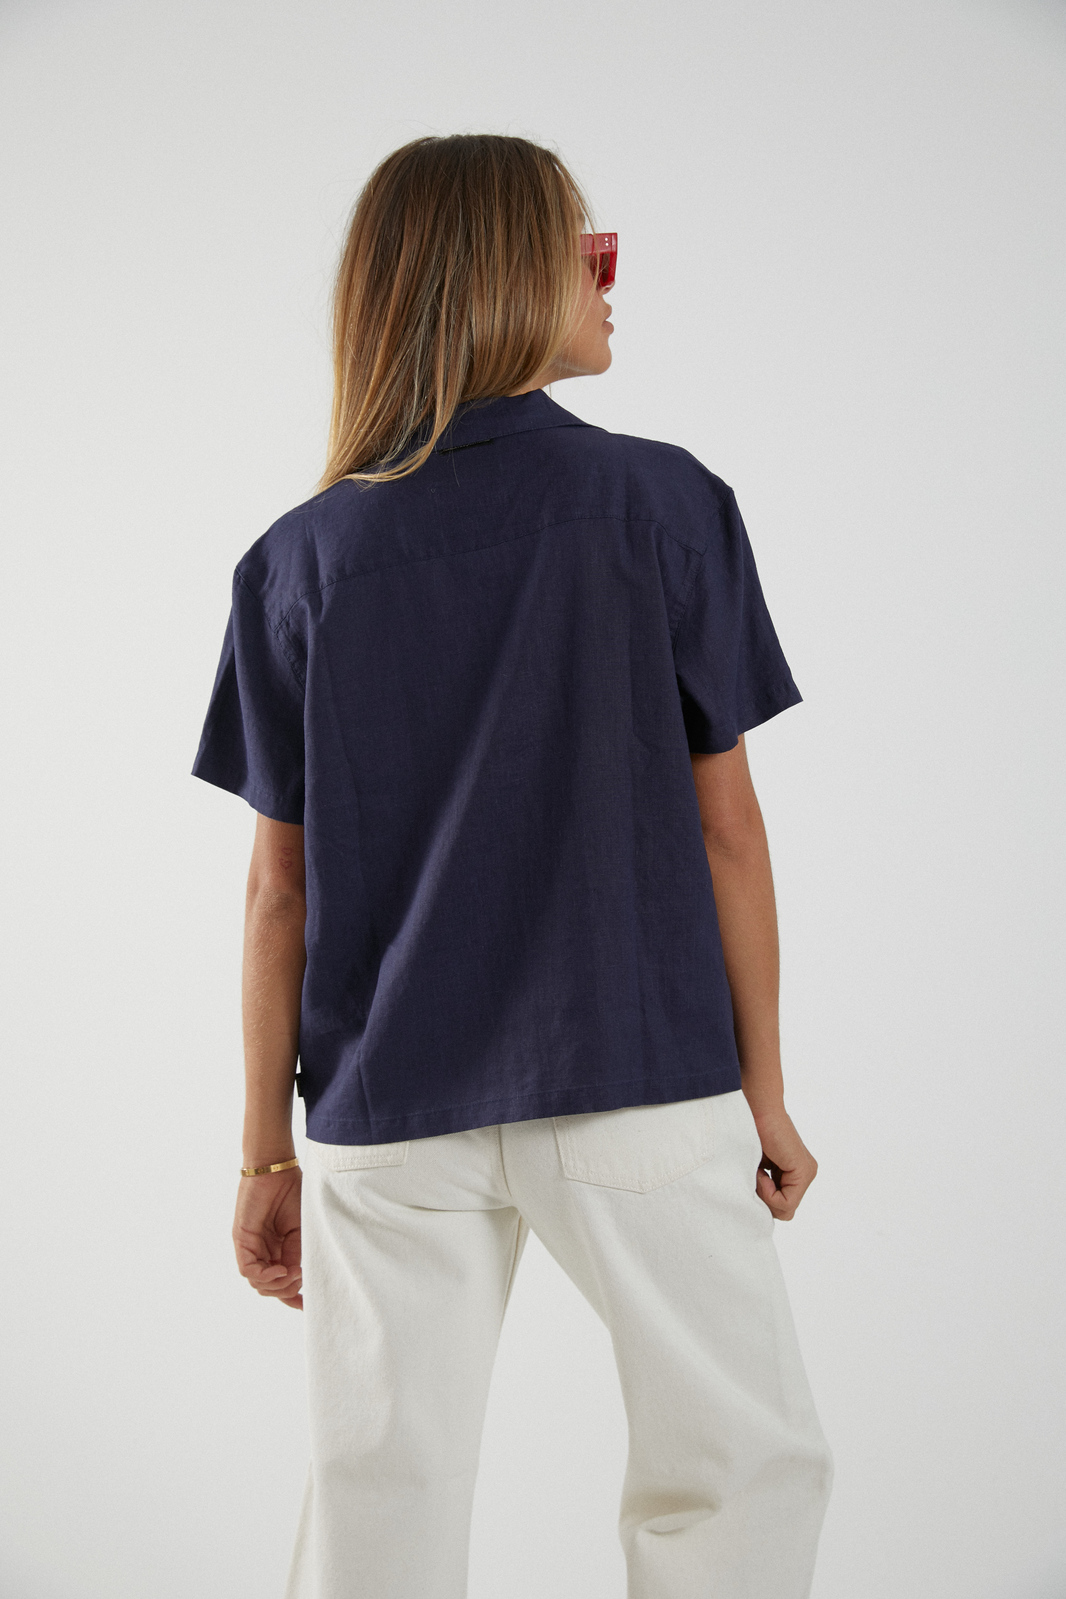 Daisy May - Hemp Short Sleeve Shirt